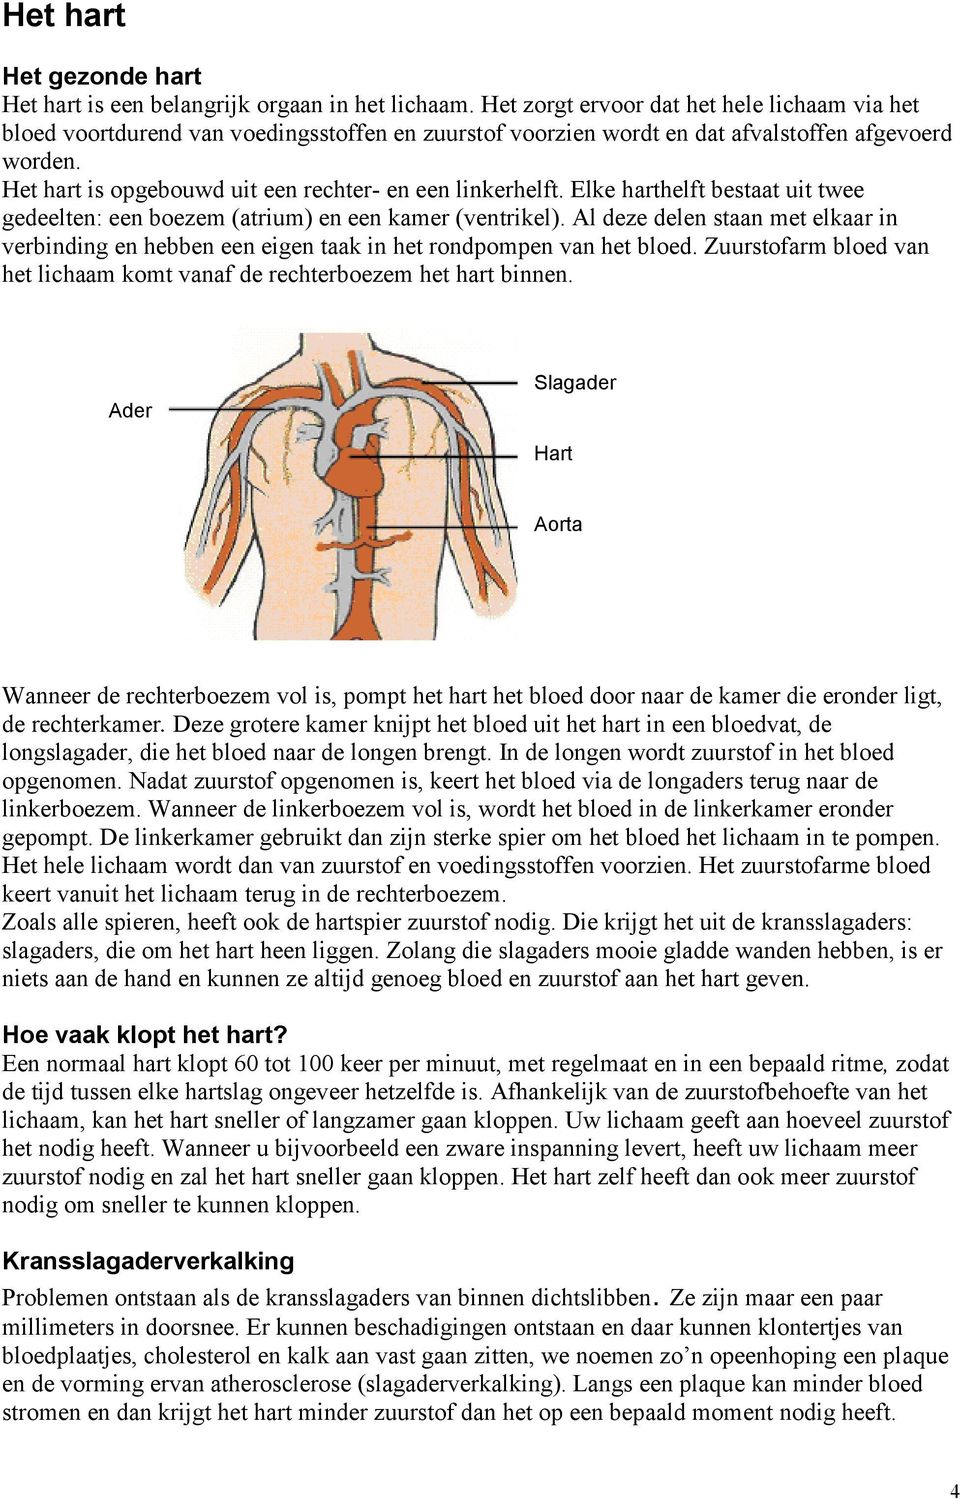 Het hart is opgebouwd uit een rechter- en een linkerhelft. Elke harthelft bestaat uit twee gedeelten: een boezem (atrium) en een kamer (ventrikel).